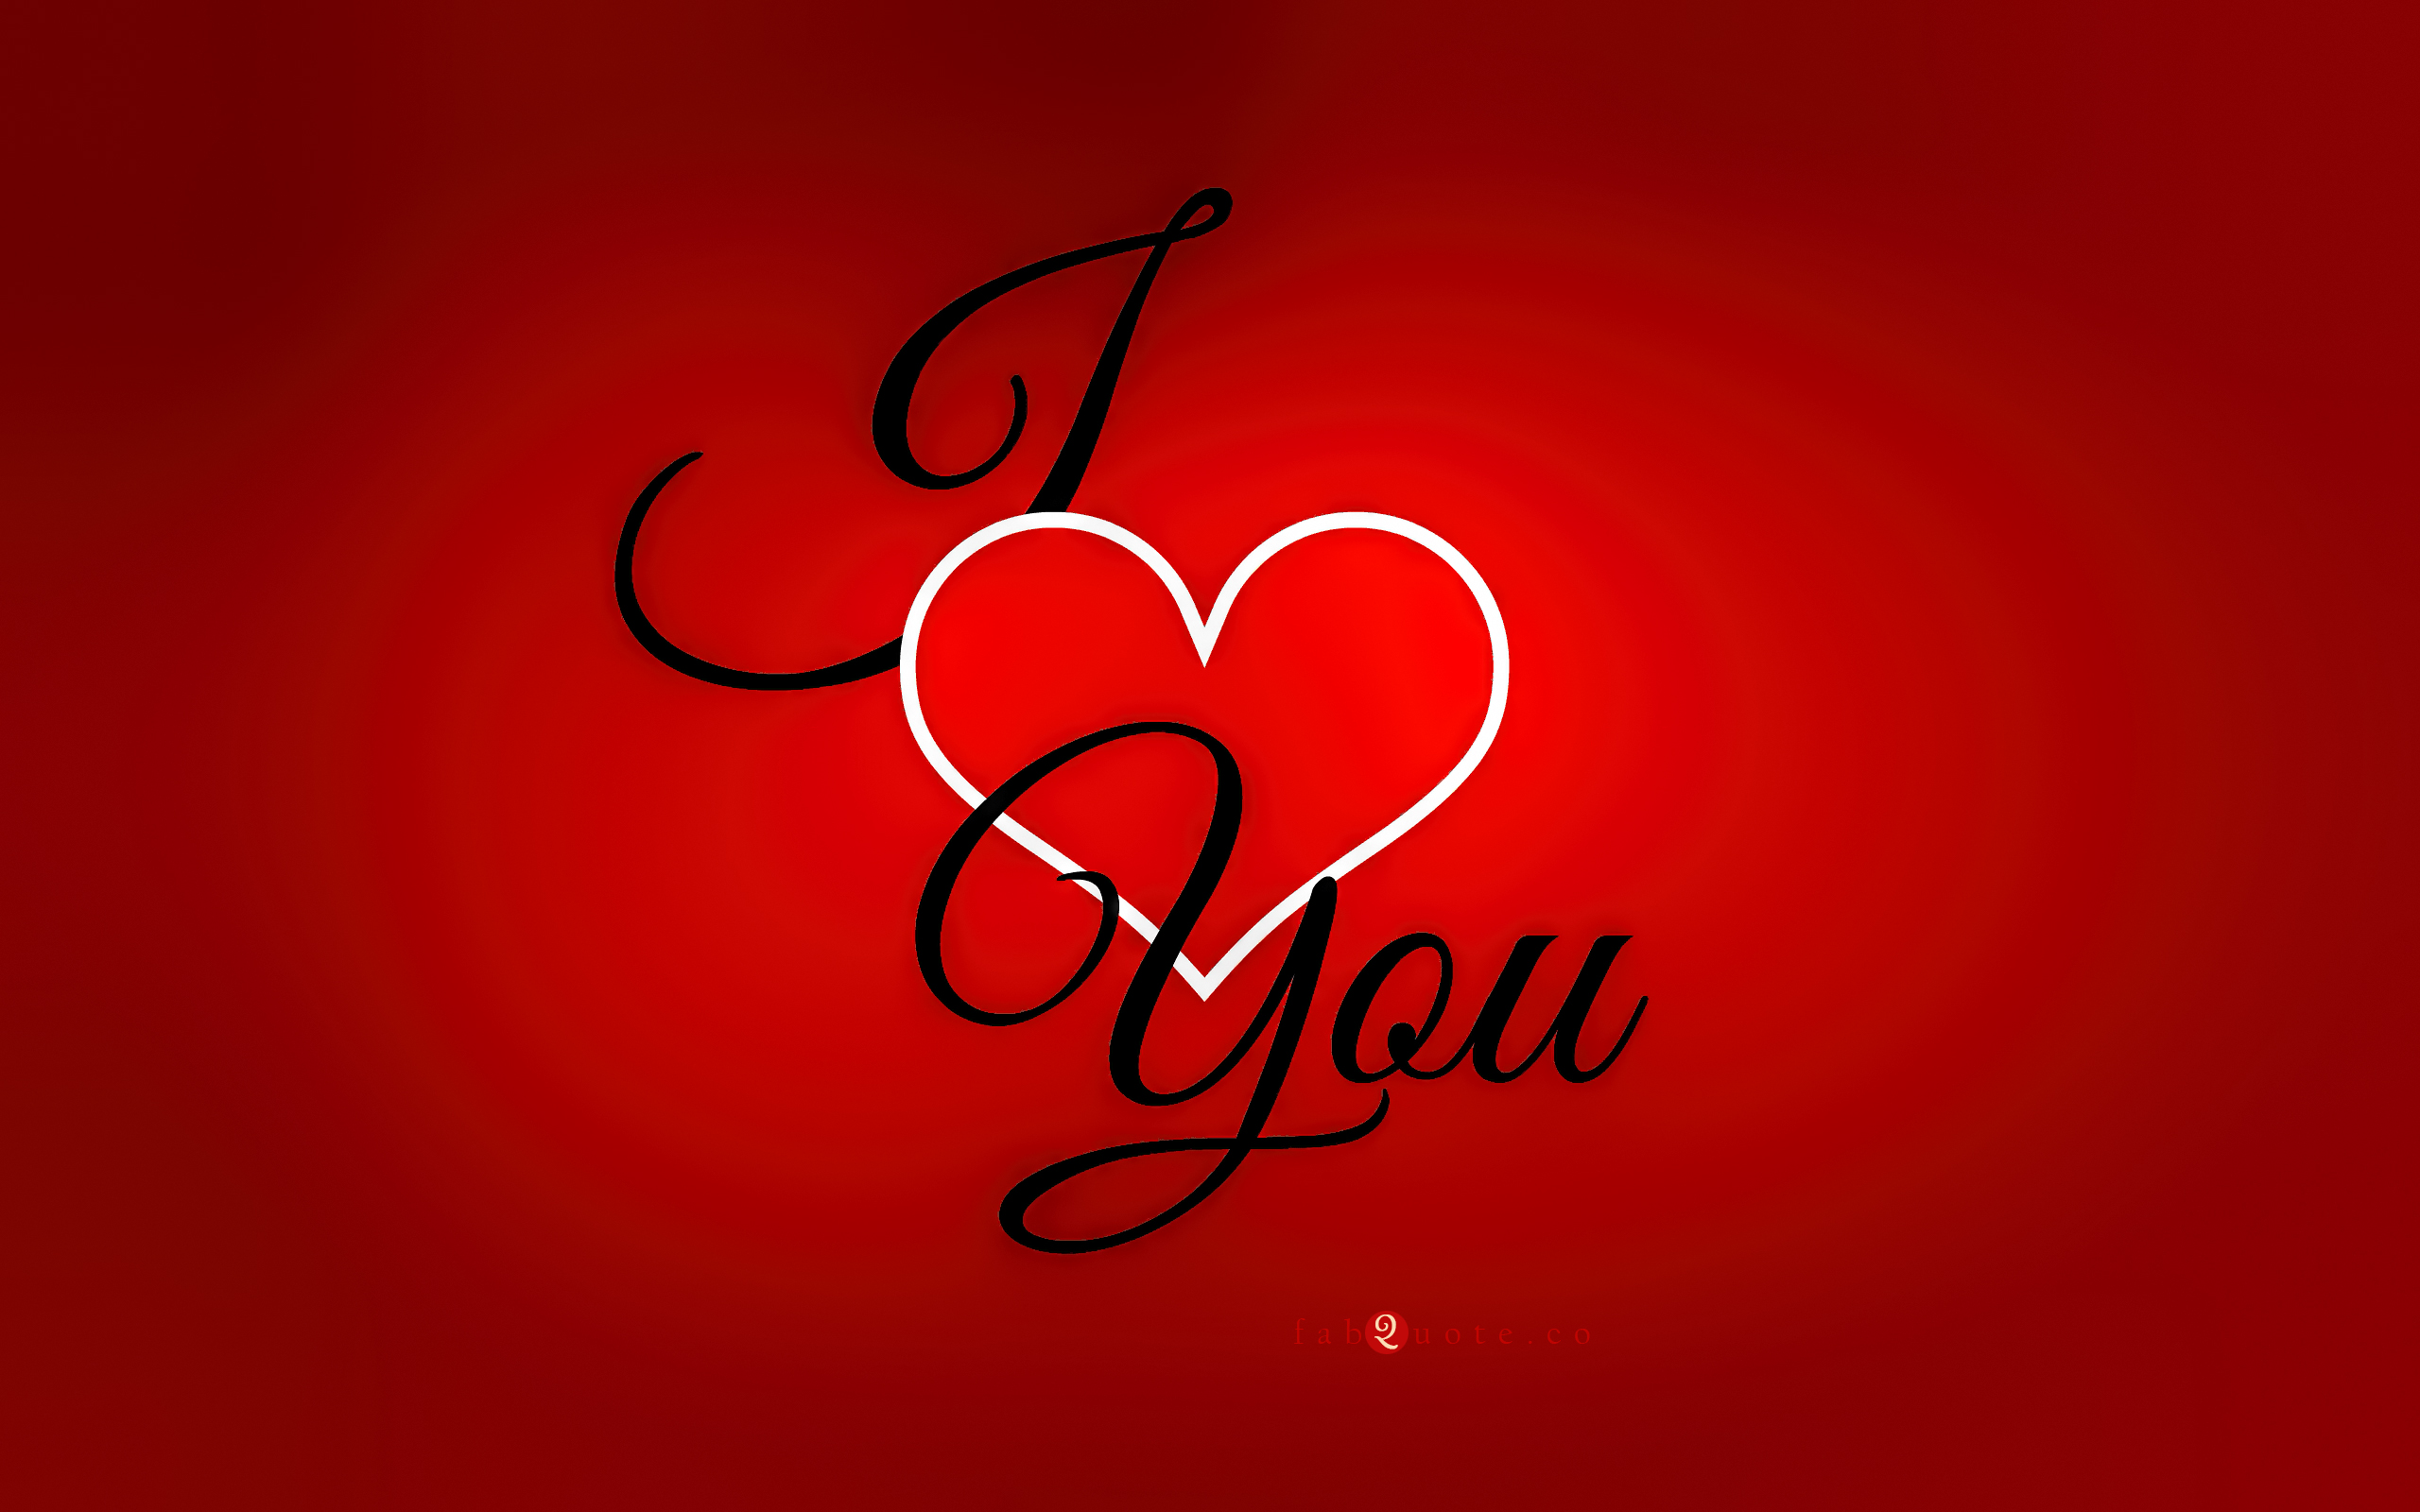 ich liebe dich wallpaper hd download,rot,herz,liebe,text,valentinstag